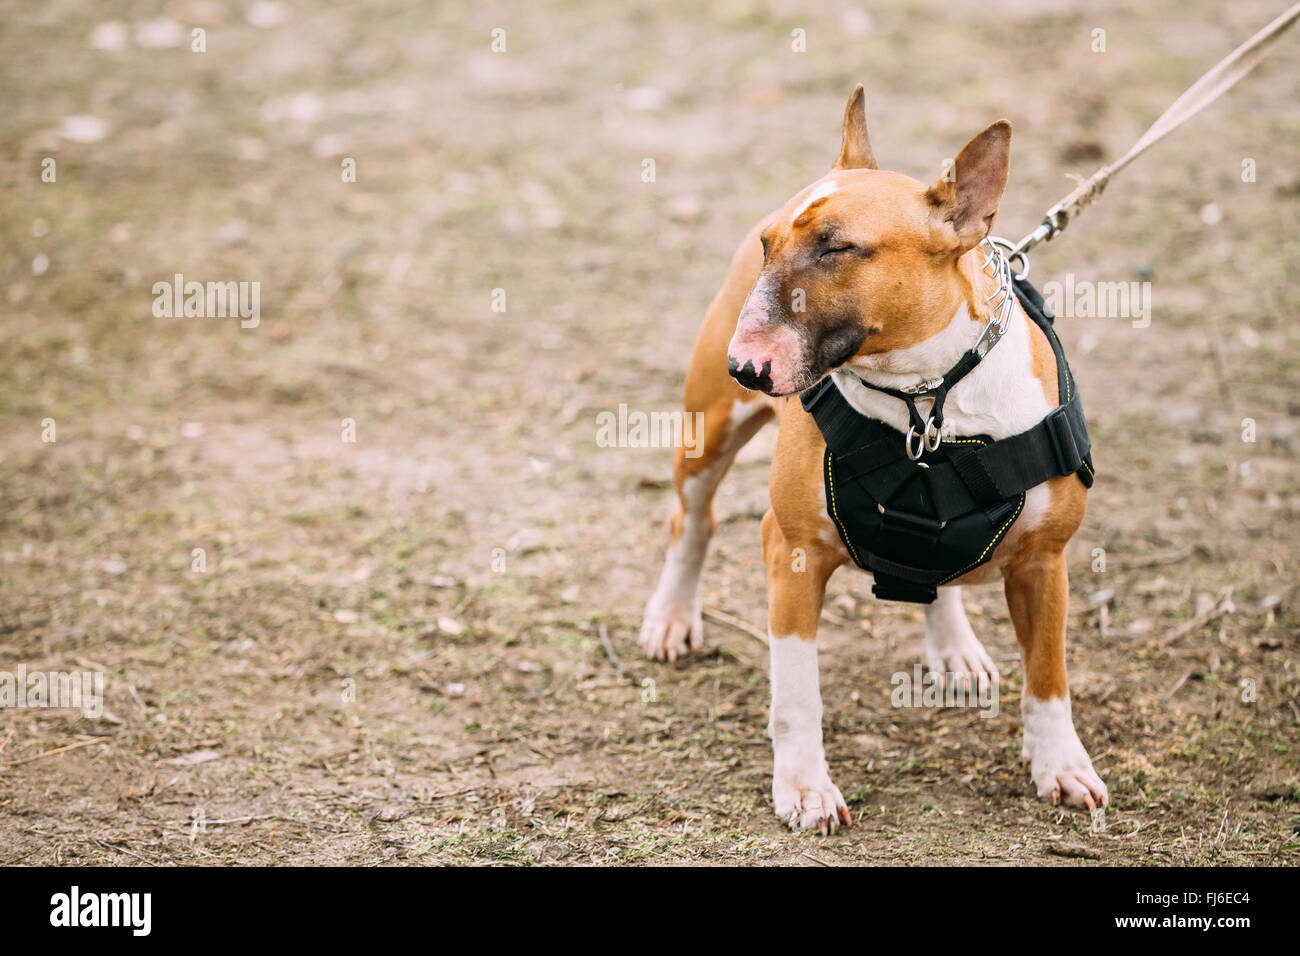 Lustiger braun Bullterrier Hund Portrait im Freien. Andere Namen - Bully, der weiße Kavalier, Gladiator und English Bull Terrier. Stockfoto